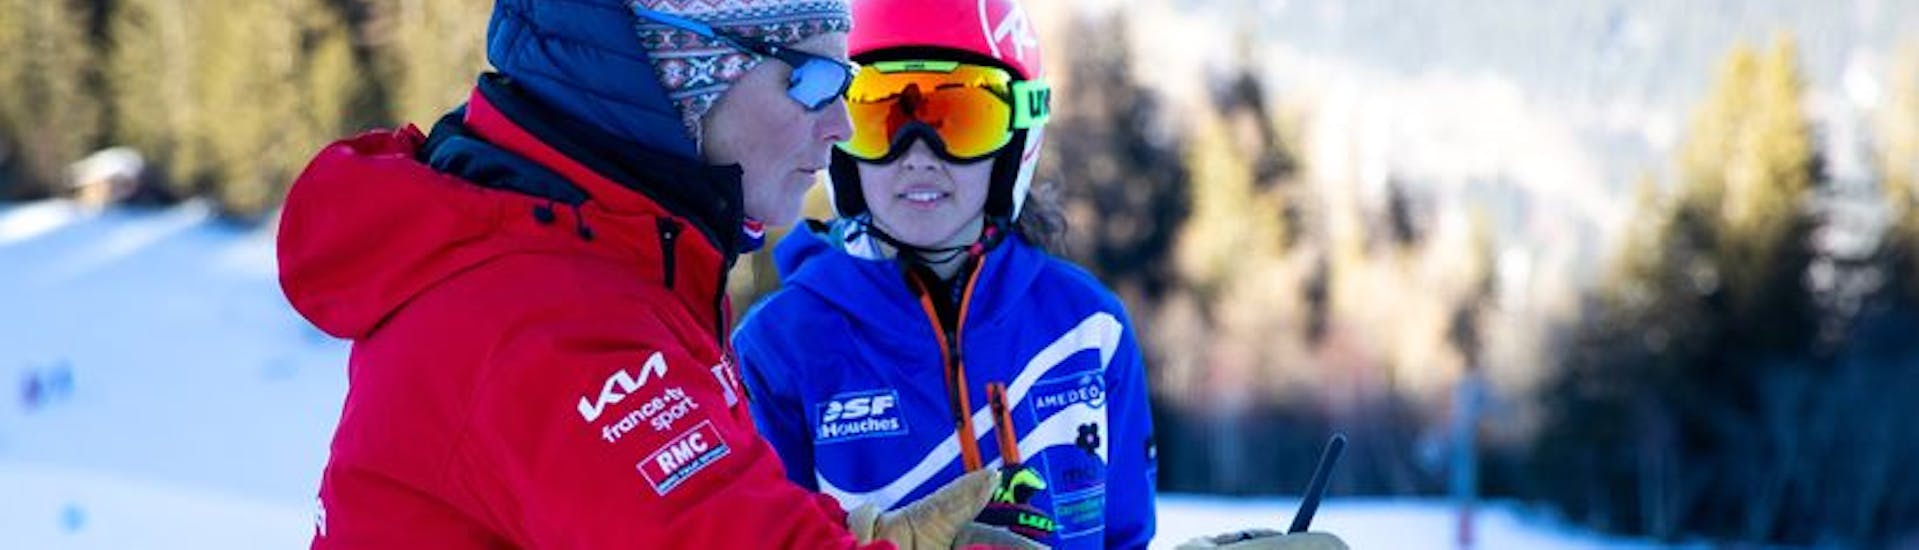 Lezioni private di sci per bambini a partire da 3 anni per tutti i livelli con ESF Les Houches.